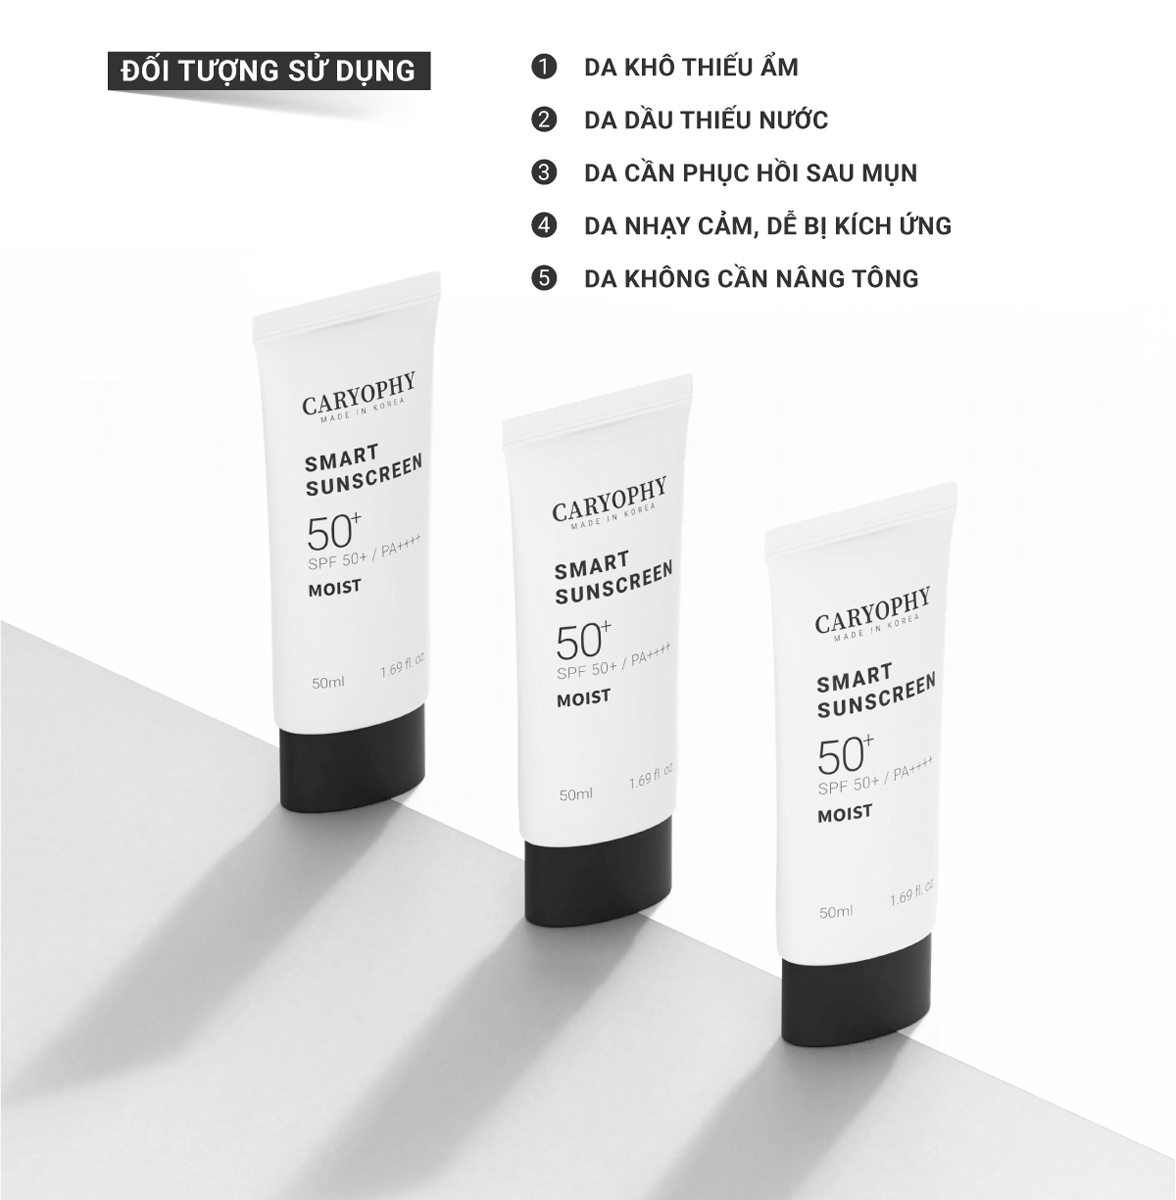 Kem Chống Nắng Caryophy Smart Moist Sunscreen SPF 50+ / PA++++ 50ml phù hợp cho mọi loại da, kể cả da mụn và da nhạy cảm.